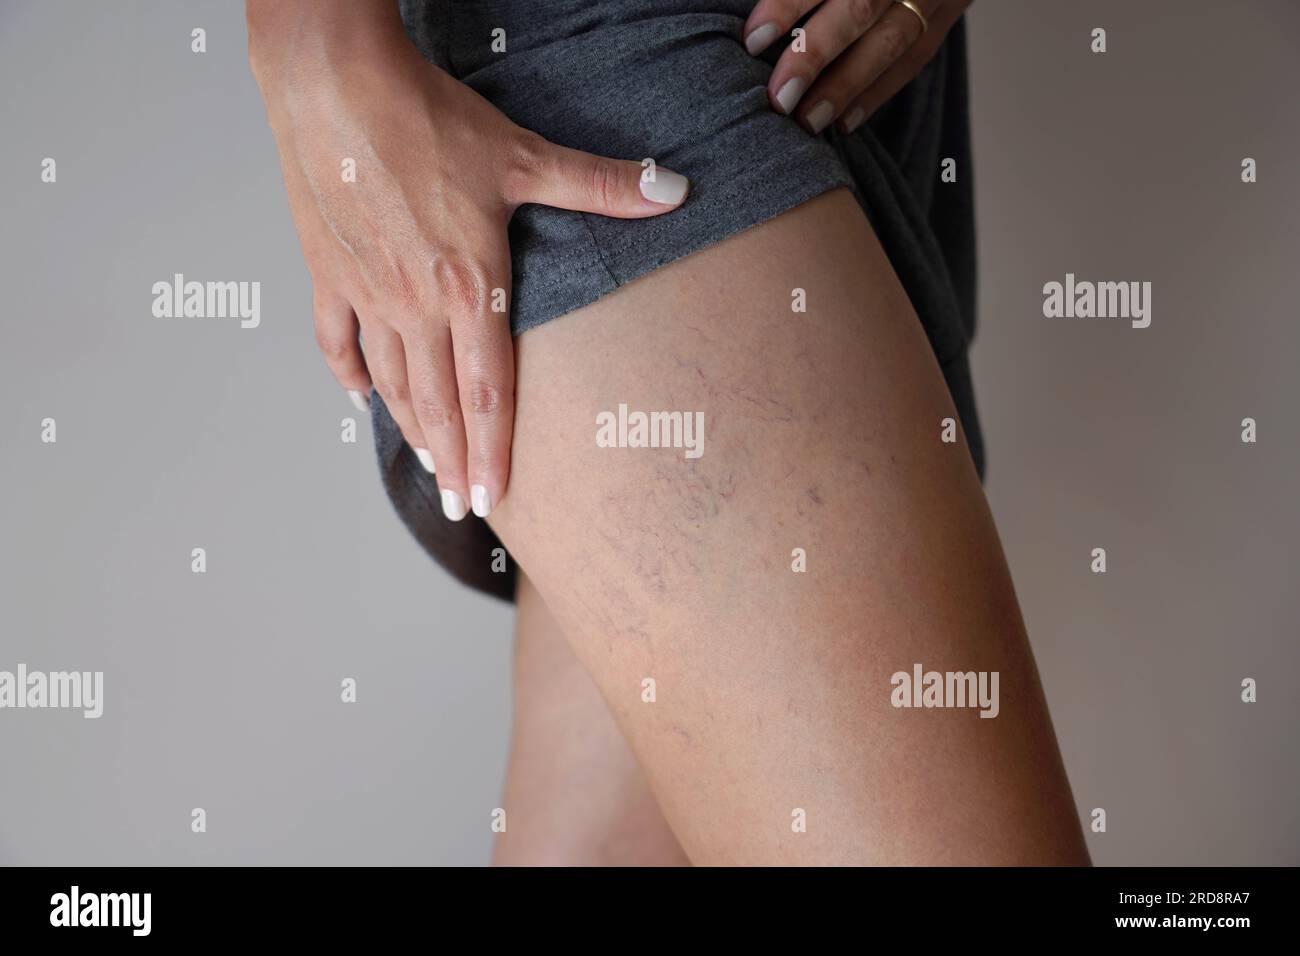 Varicose veins on woman legs Stock Photo